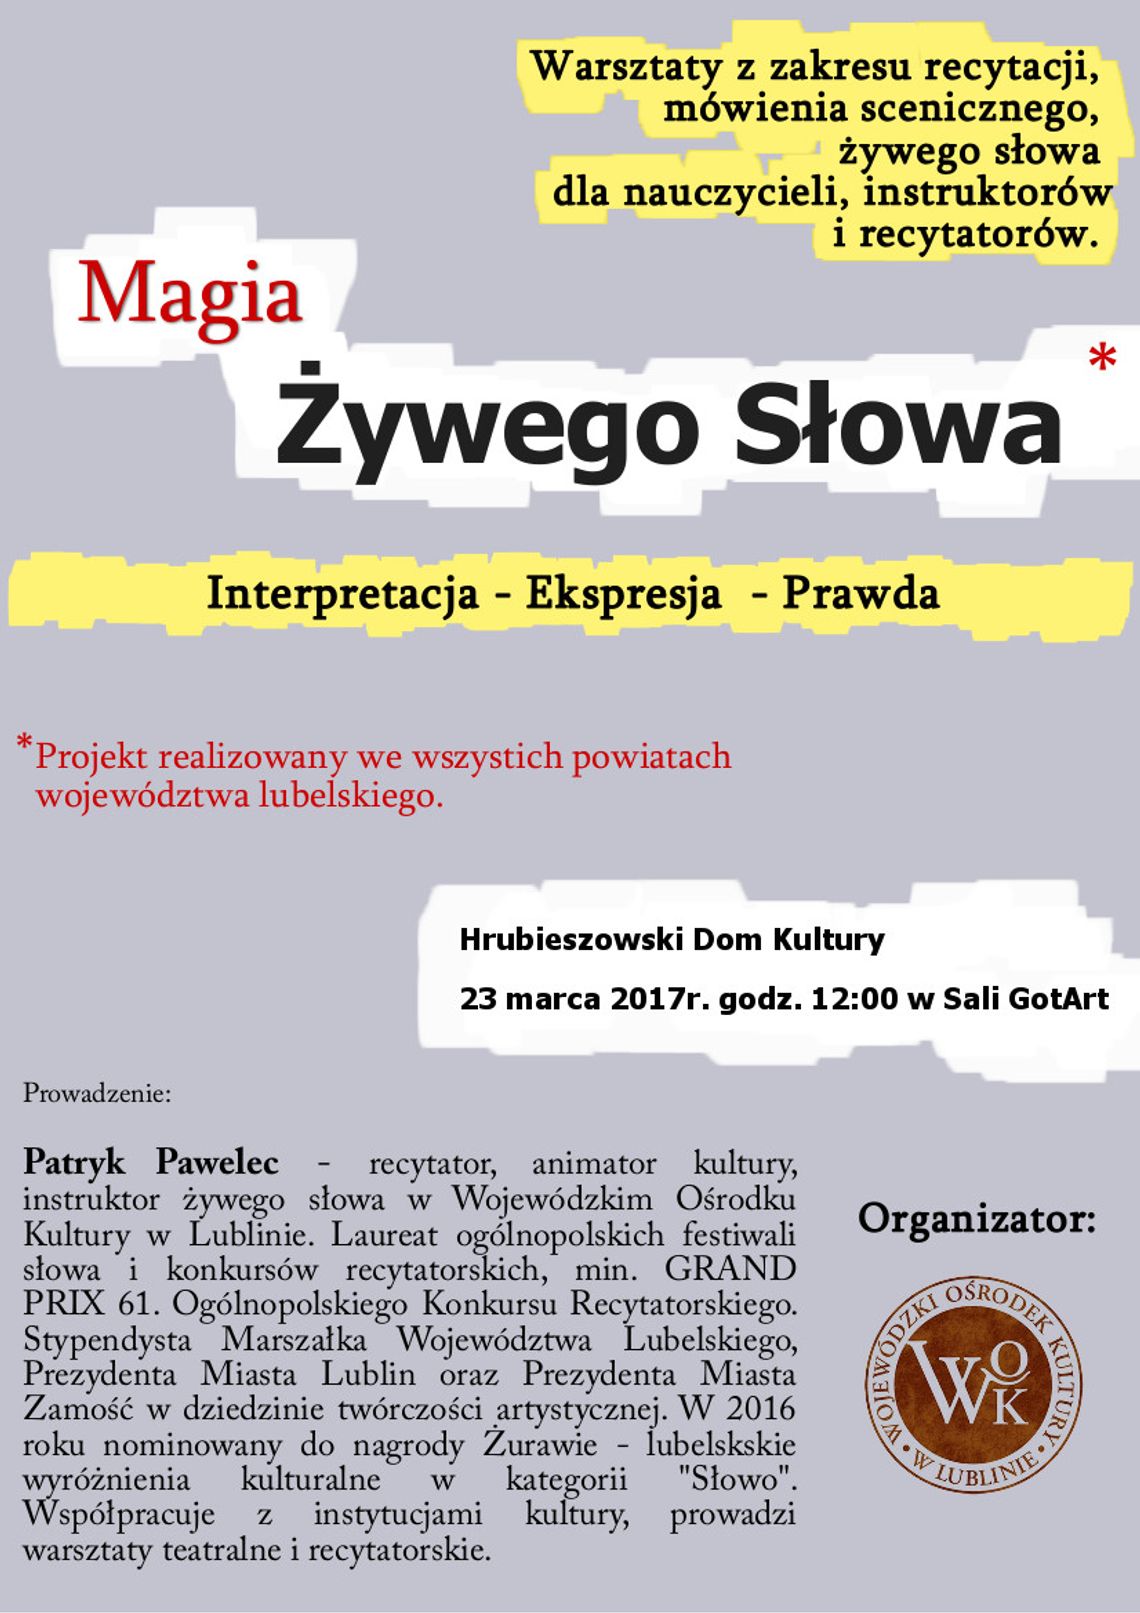 Hrubieszów: Magia żywego słowa - warsztaty recytatorskie w HDK